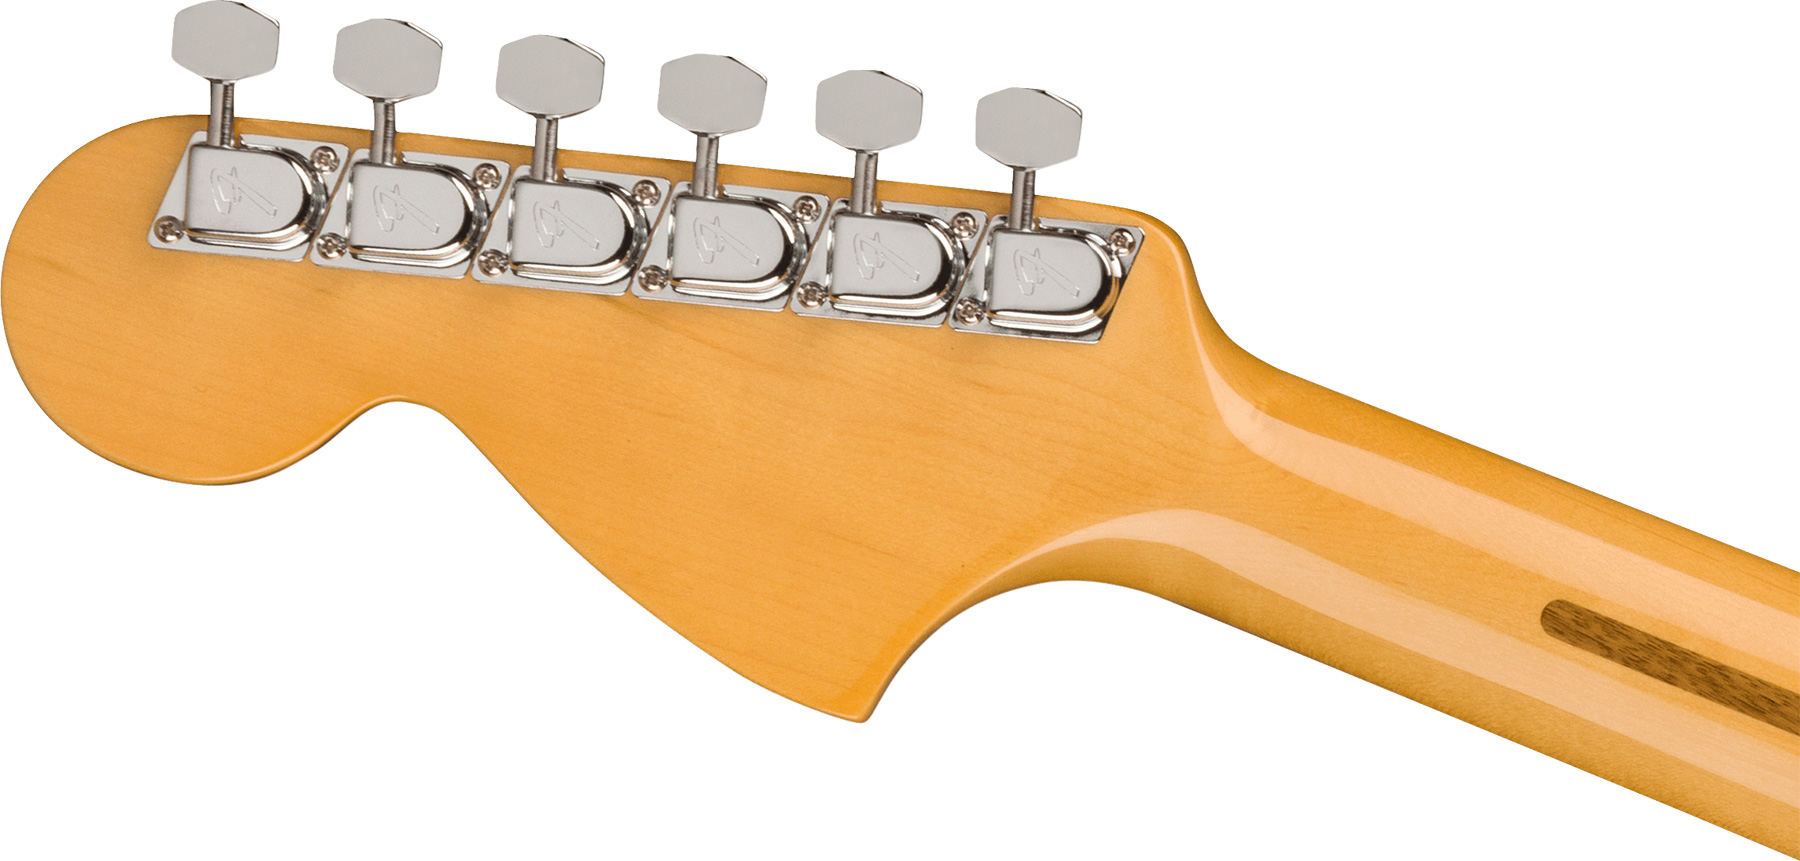 Fender Strat 1973 American Vintage Ii Usa 3s Trem Mn - Lake Placid Blue - E-Gitarre in Str-Form - Variation 3